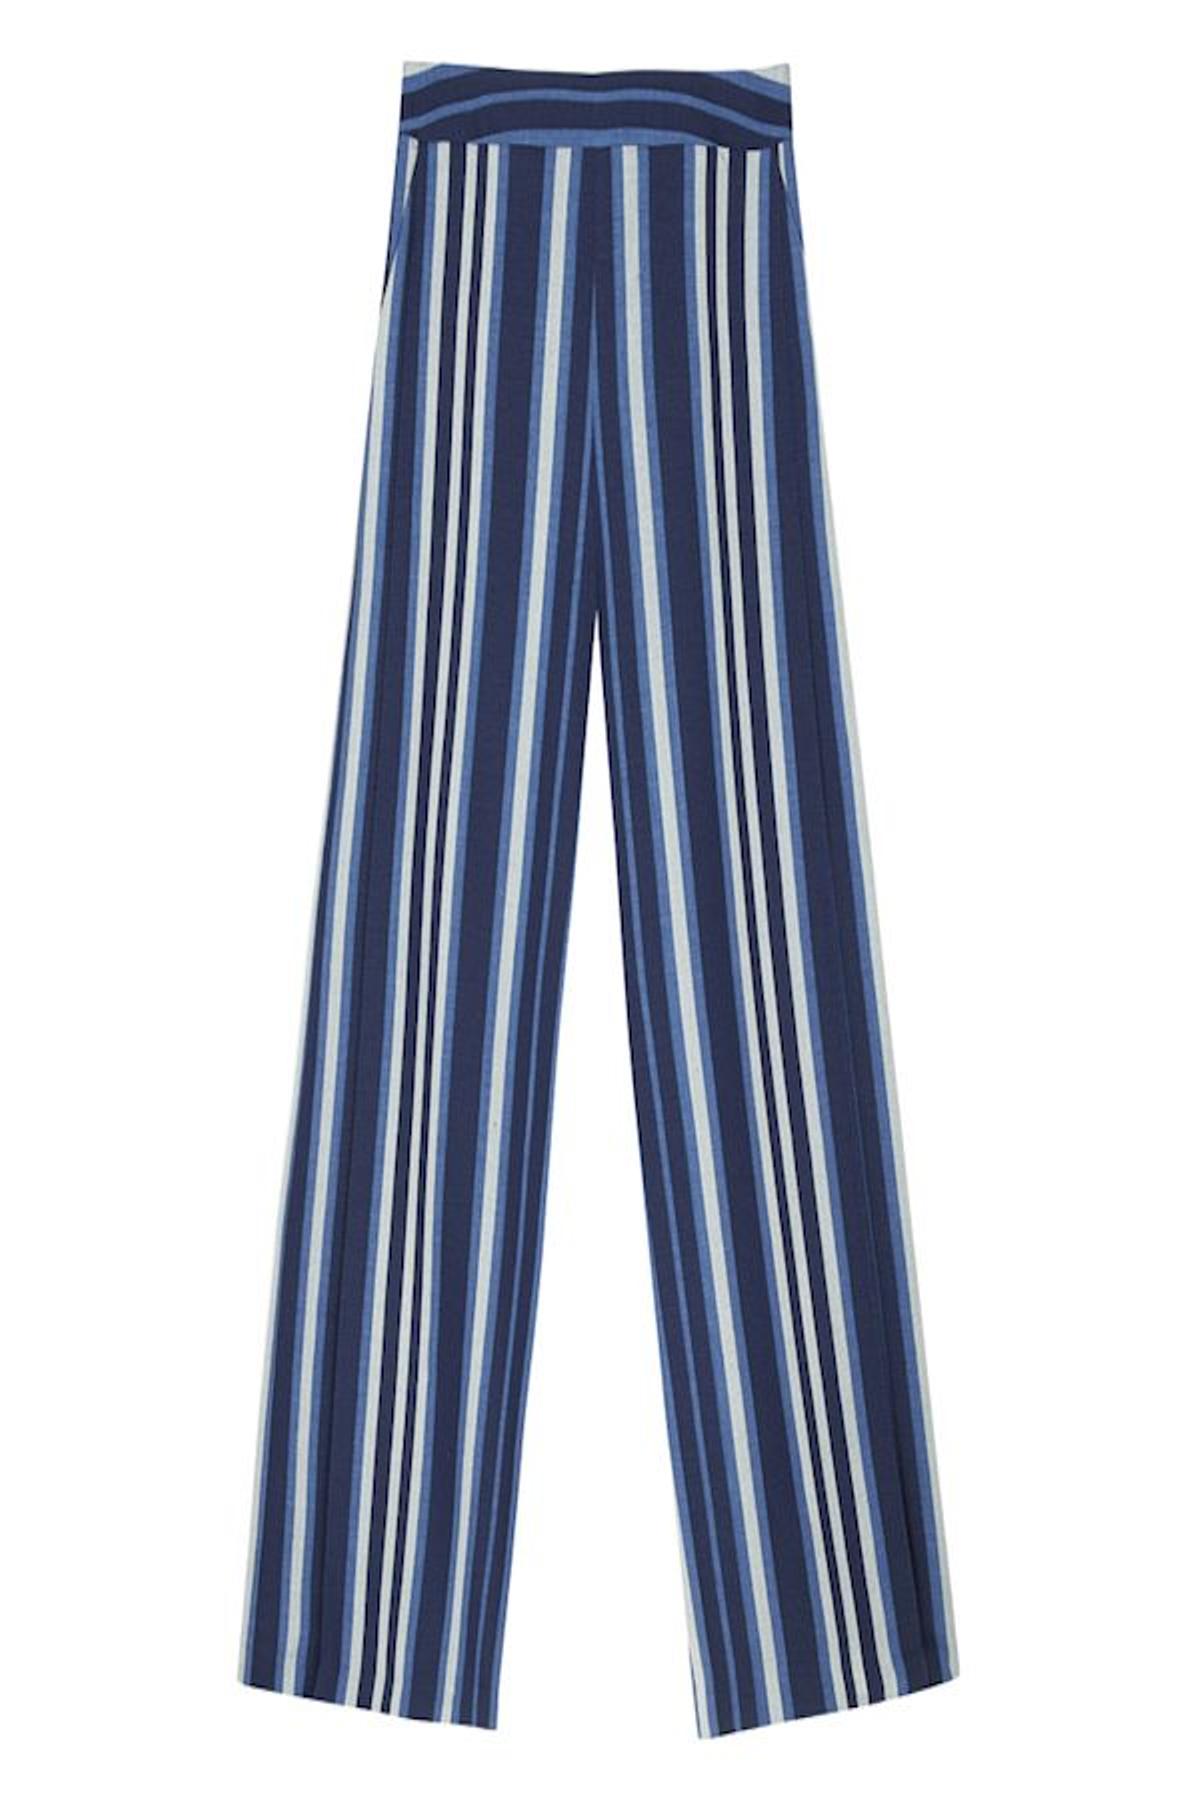 Pantalón XL, de Asos, 60 euros